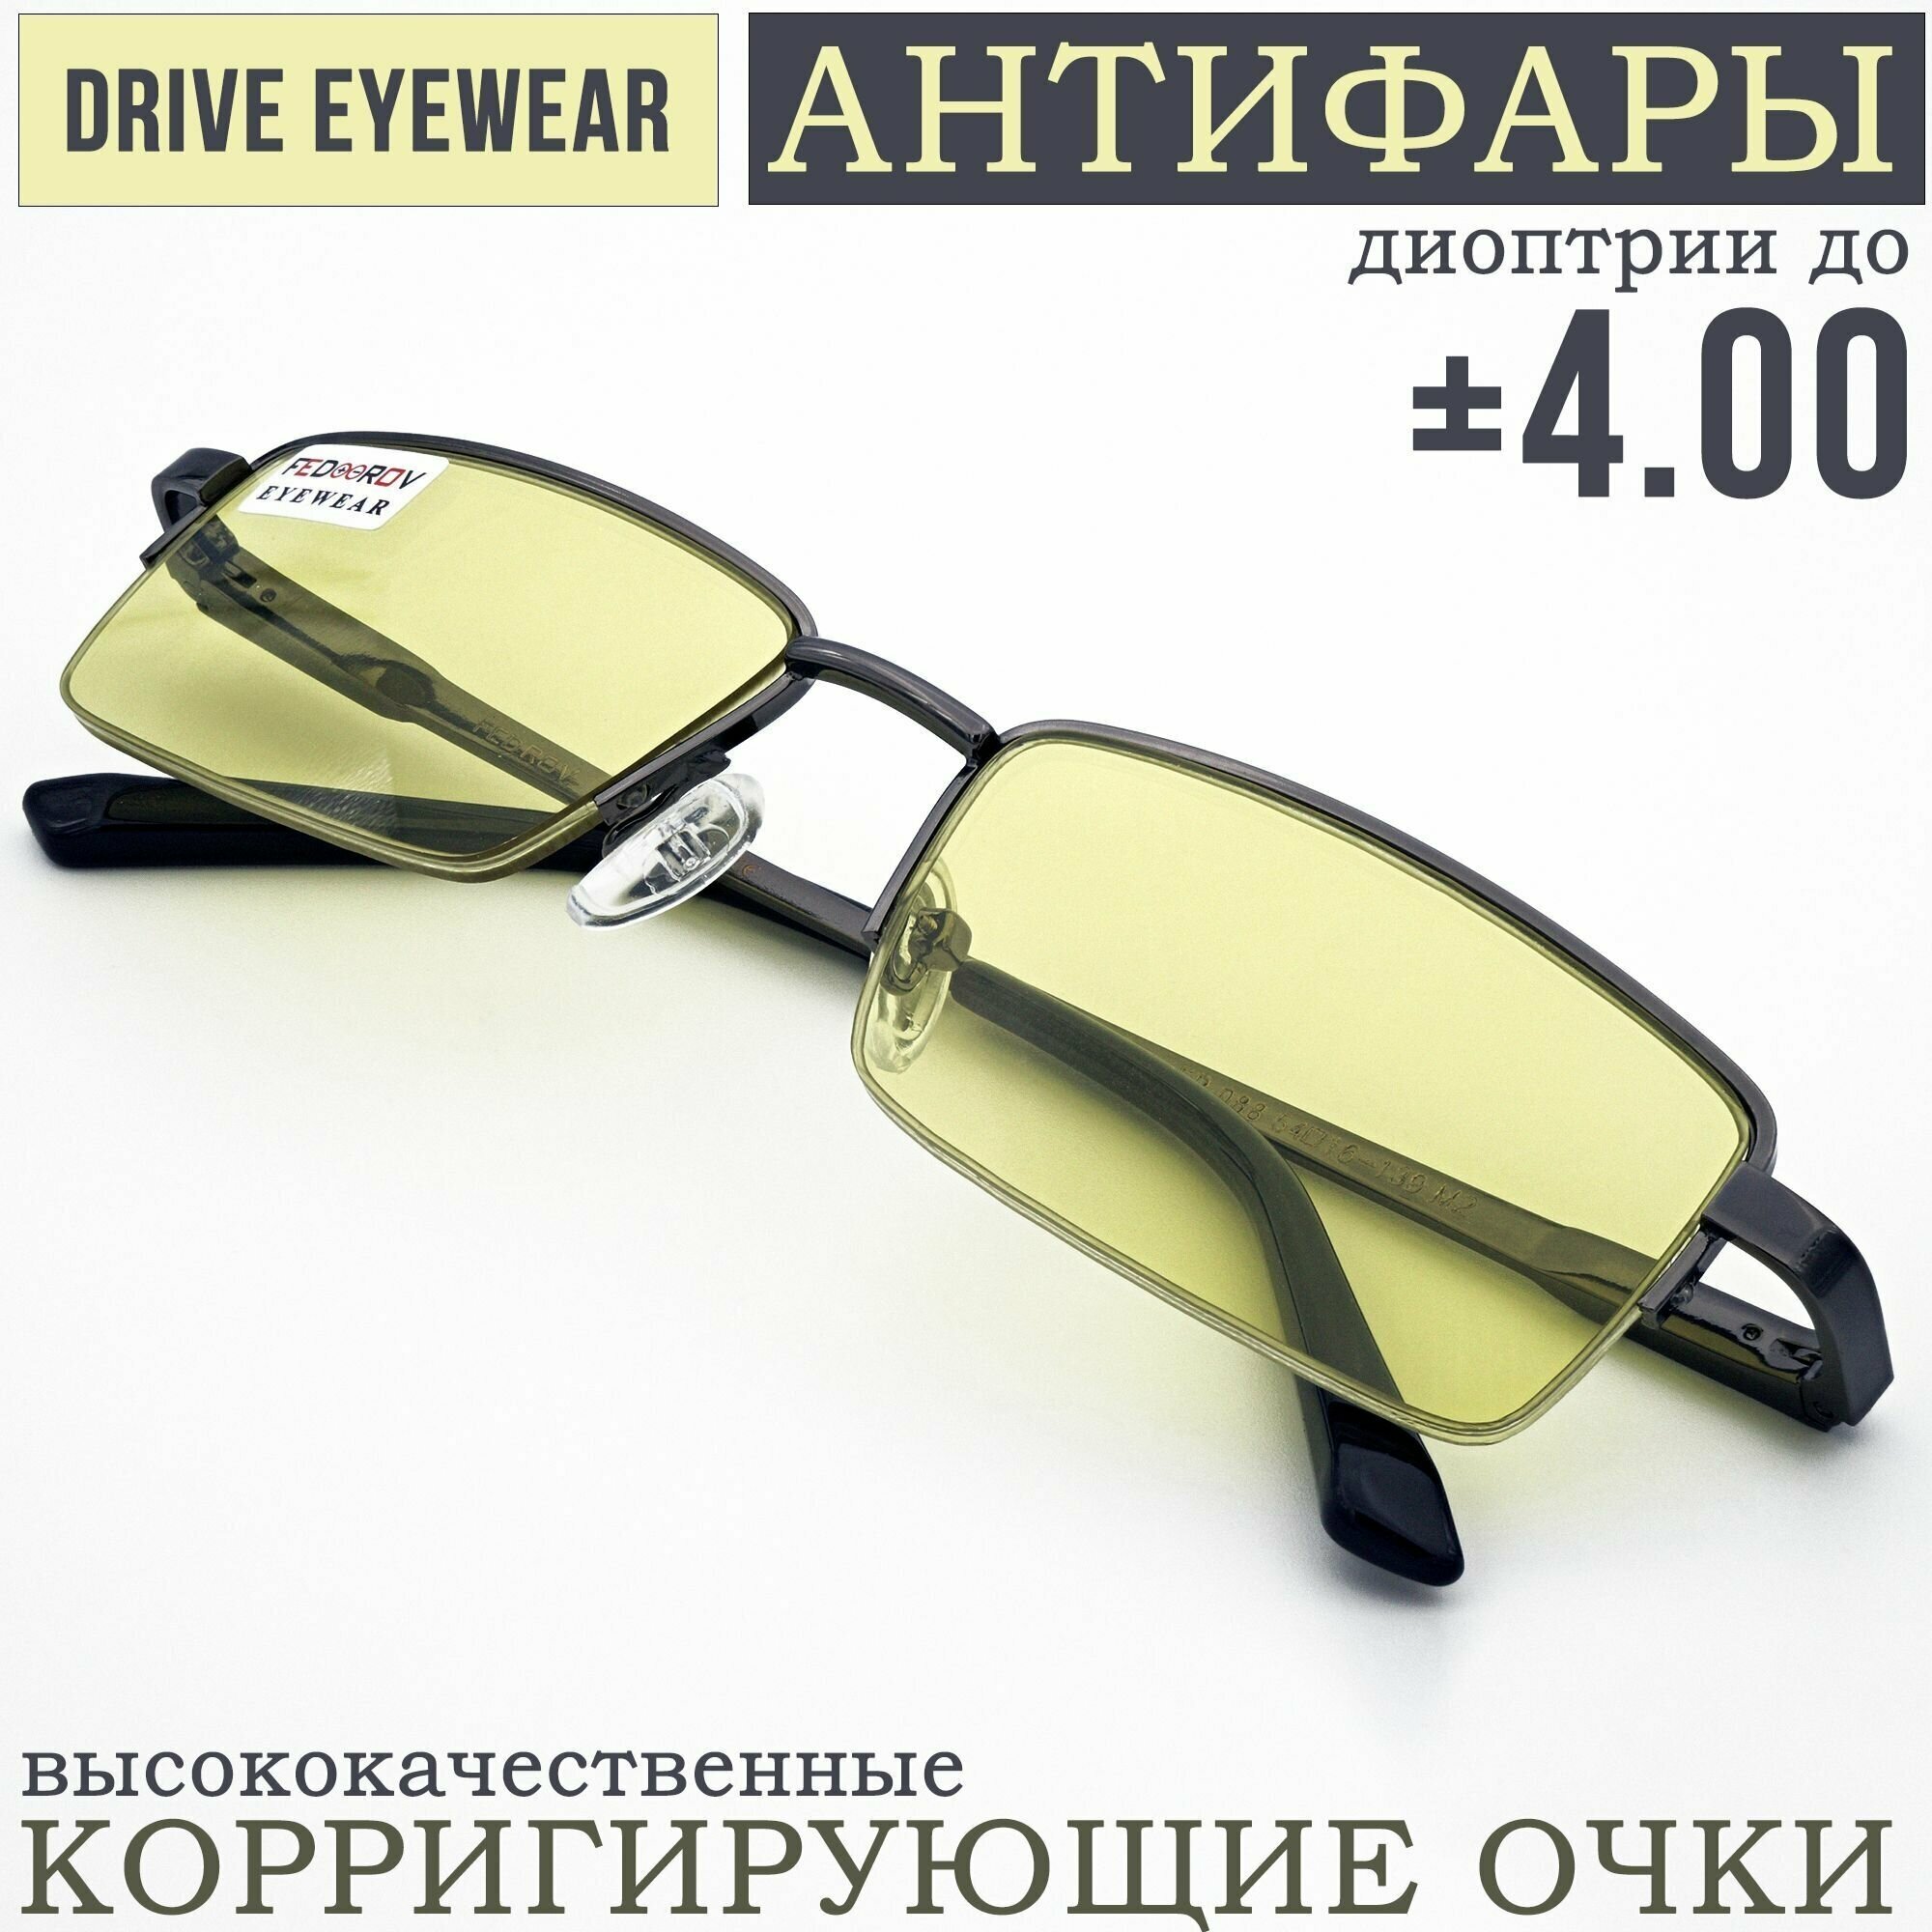 Готовые очки водительские Антифары с диоптриями +1,00